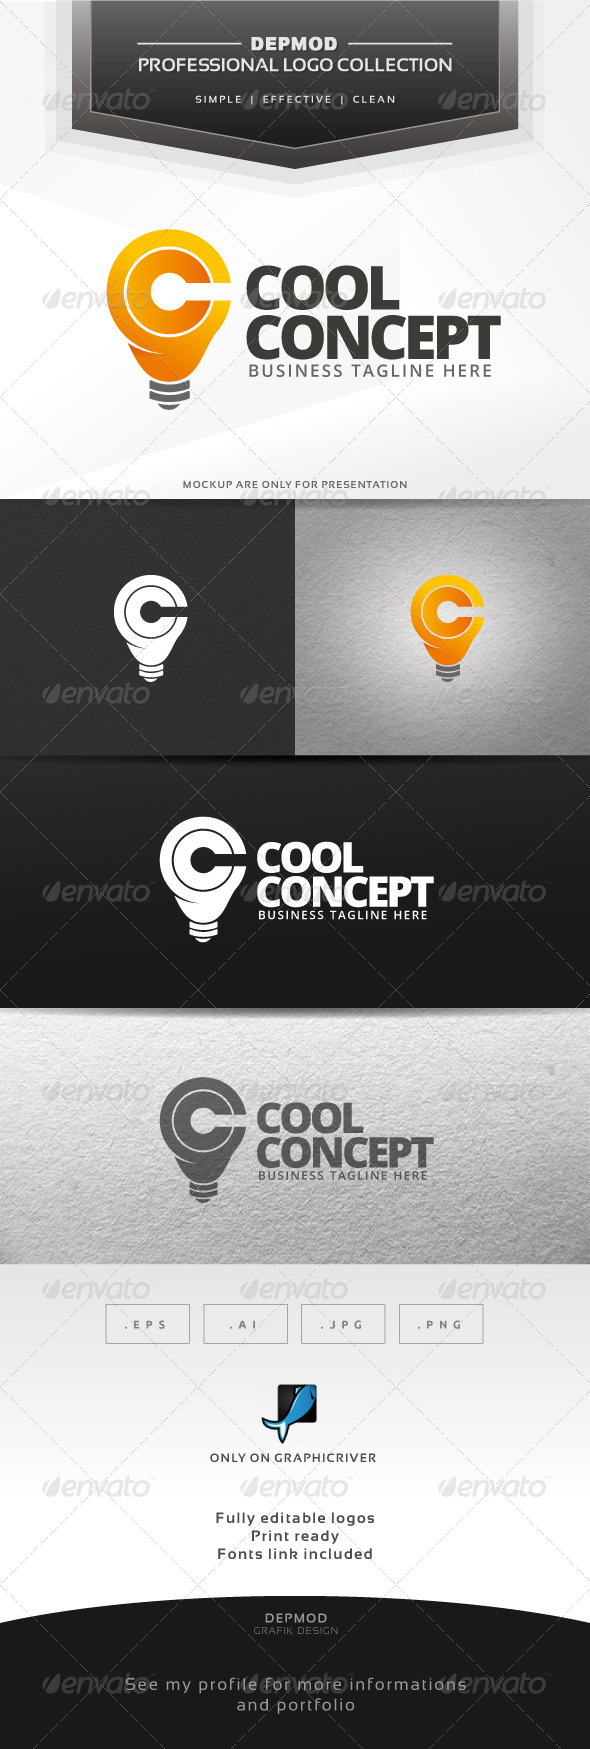 Cool Concept Logo